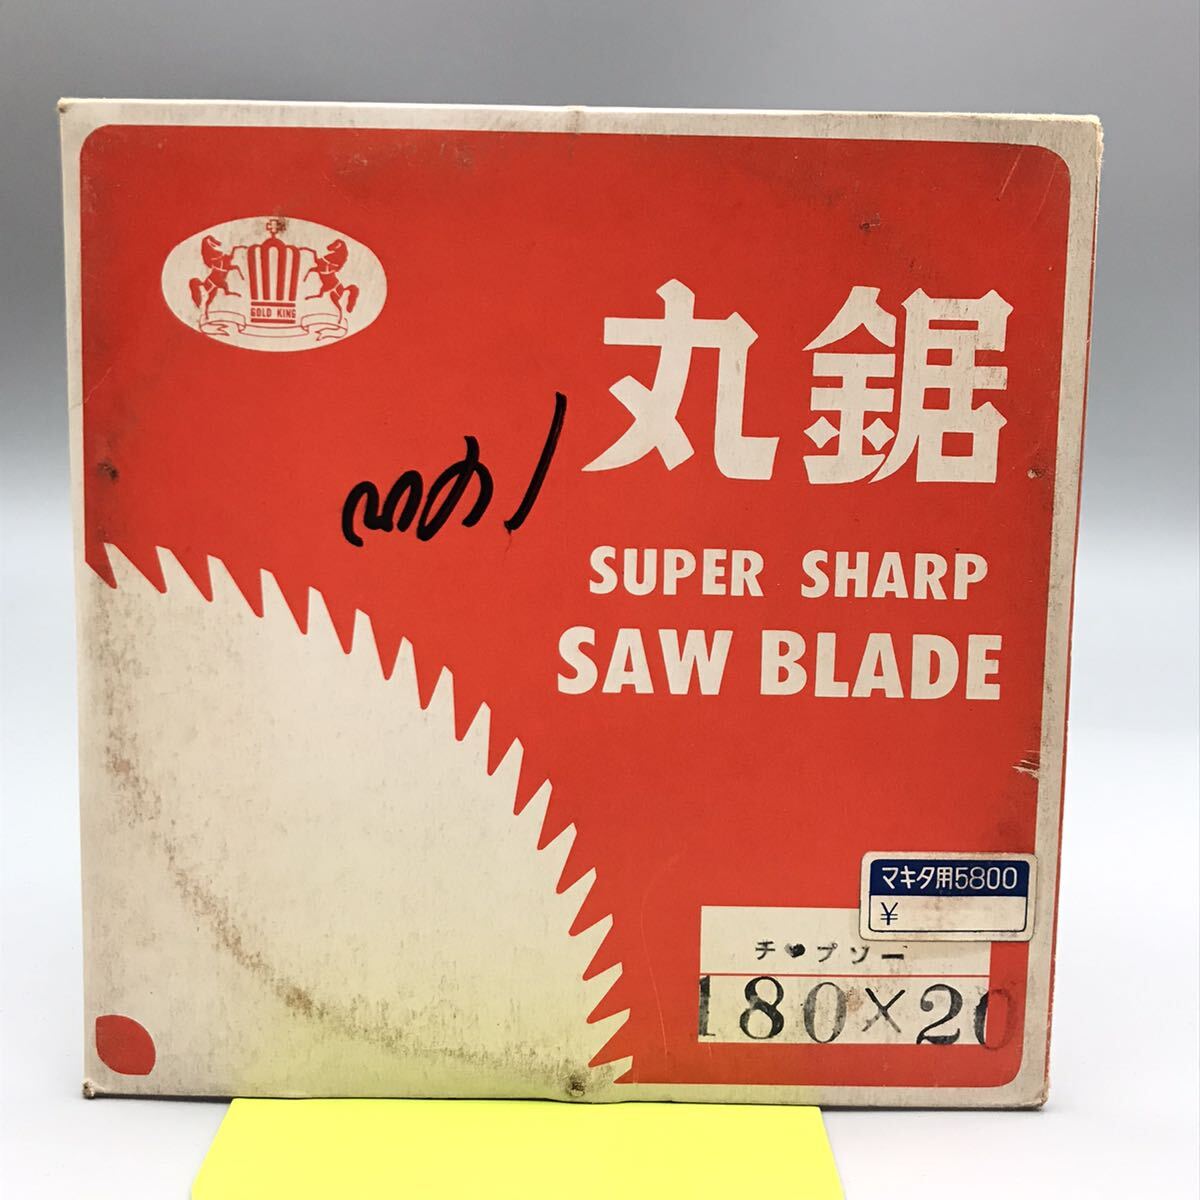 【新品 未使用】SUPER SHARP スーパー シャープ SAW BLADE マキタ用 チャプソー 刃 180×20 電動工具 丸のこ マルノコ 替刃 木材 おすすめ_画像1